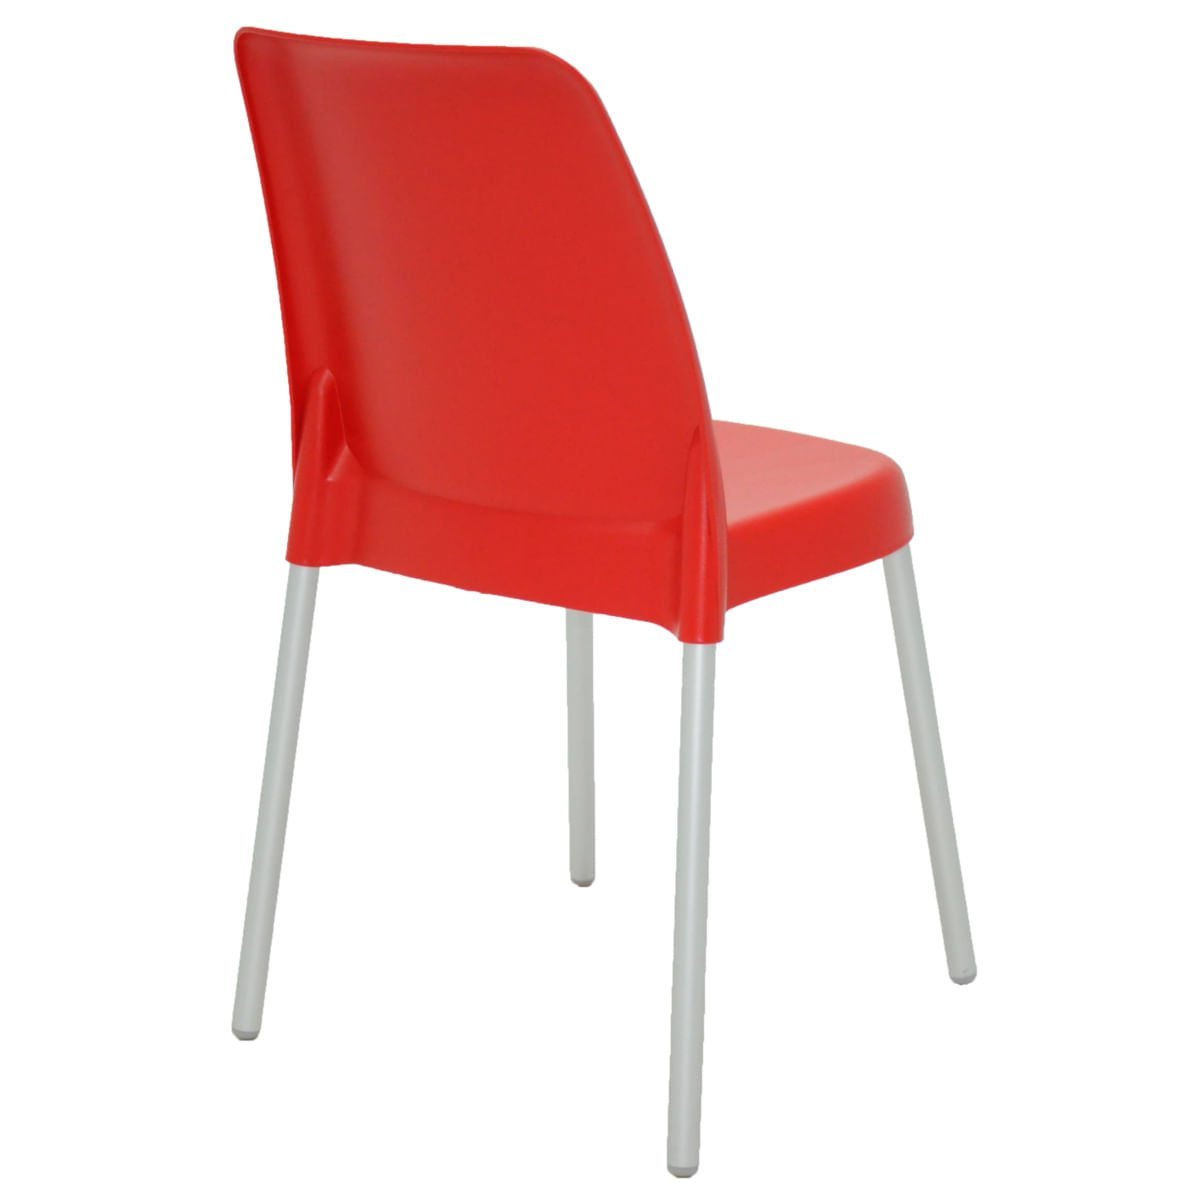 Cadeira Tramontina Vanda em Polipropileno Vermelho com Pernas de Alumínio - 5